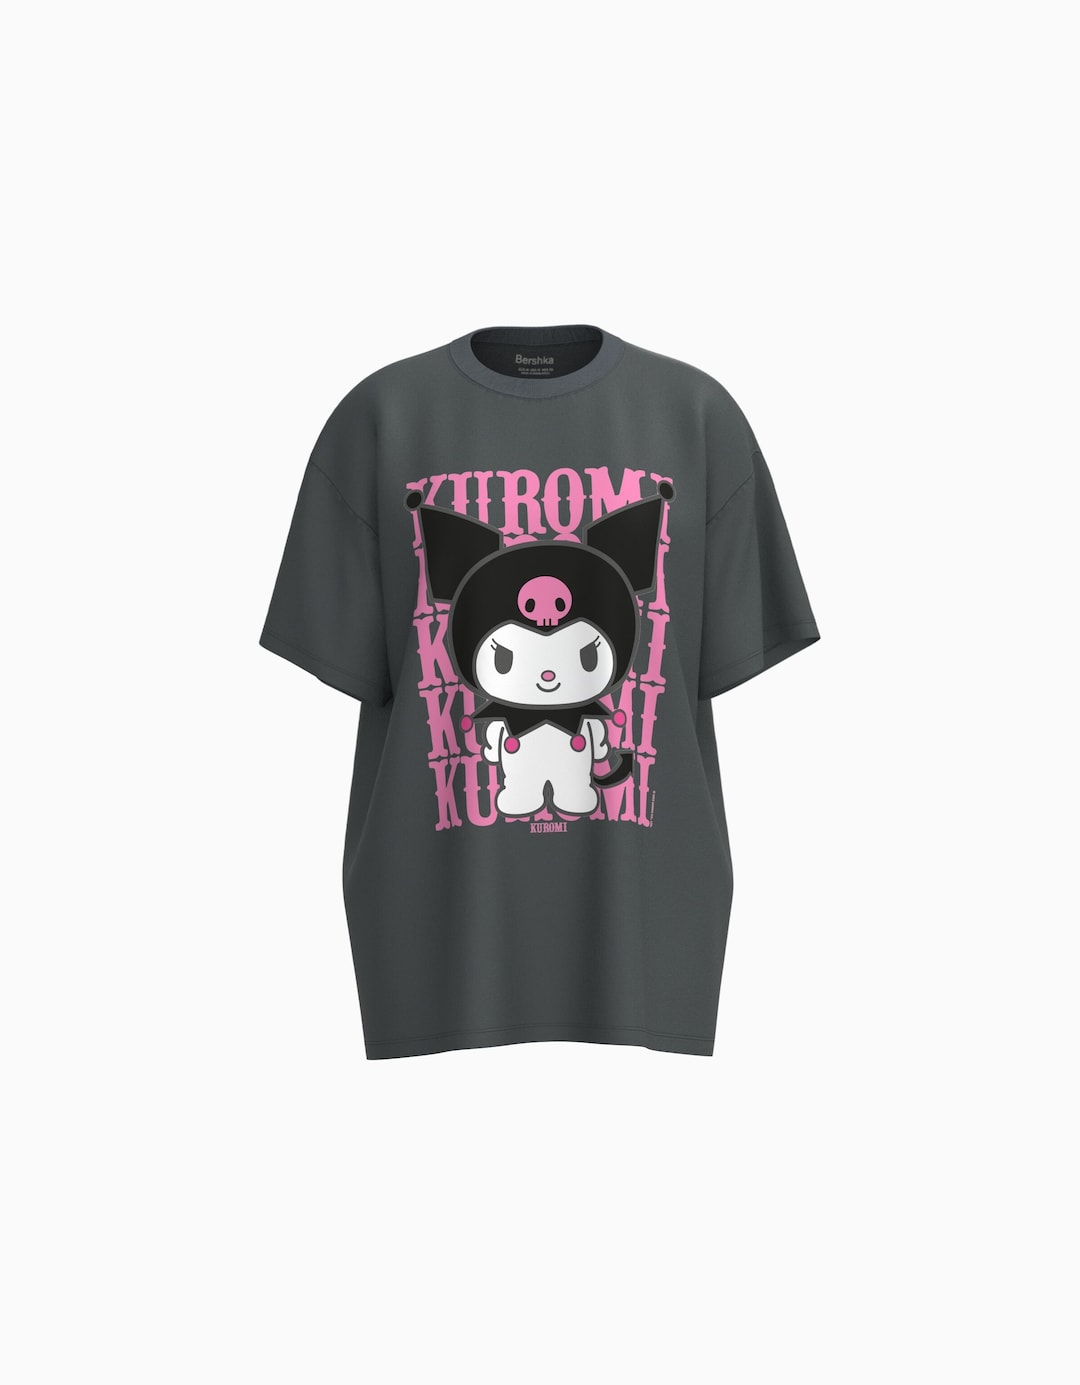 Kuromi print short sleeve oversize T-shirt